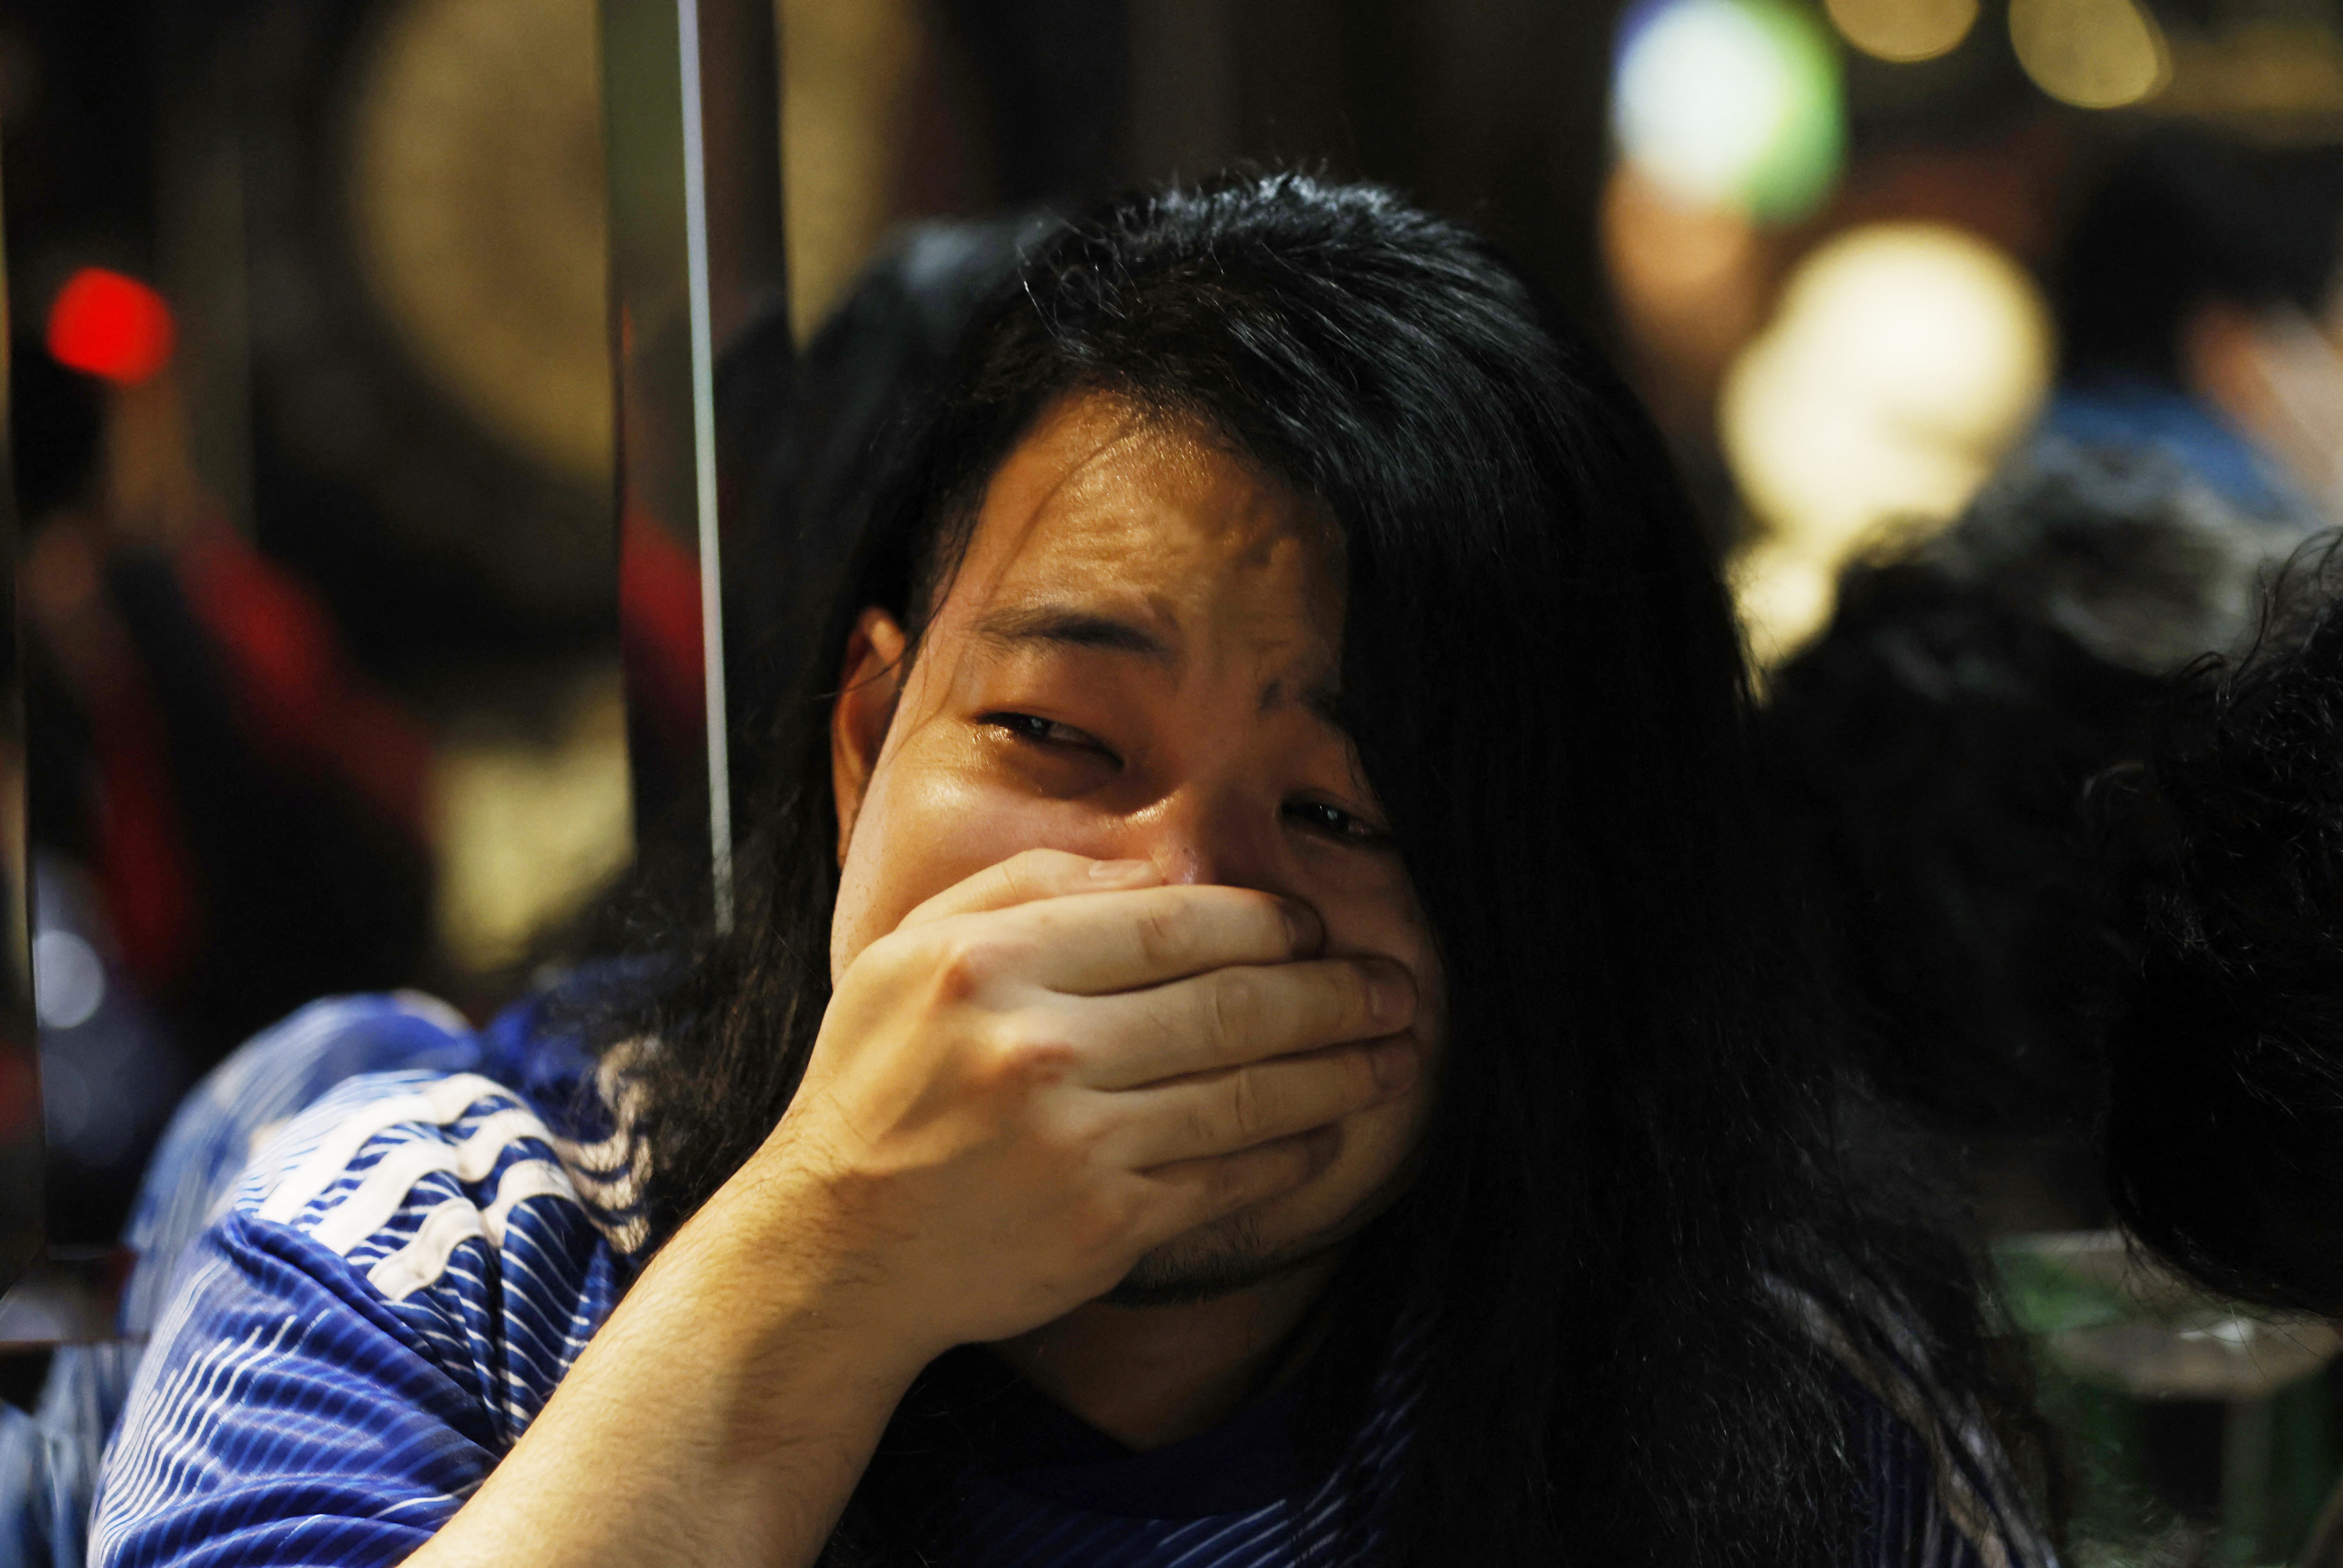 La frustración de otra fanática que no pudo contener las lágrimas (REUTERS/Kim Kyung-Hoon)